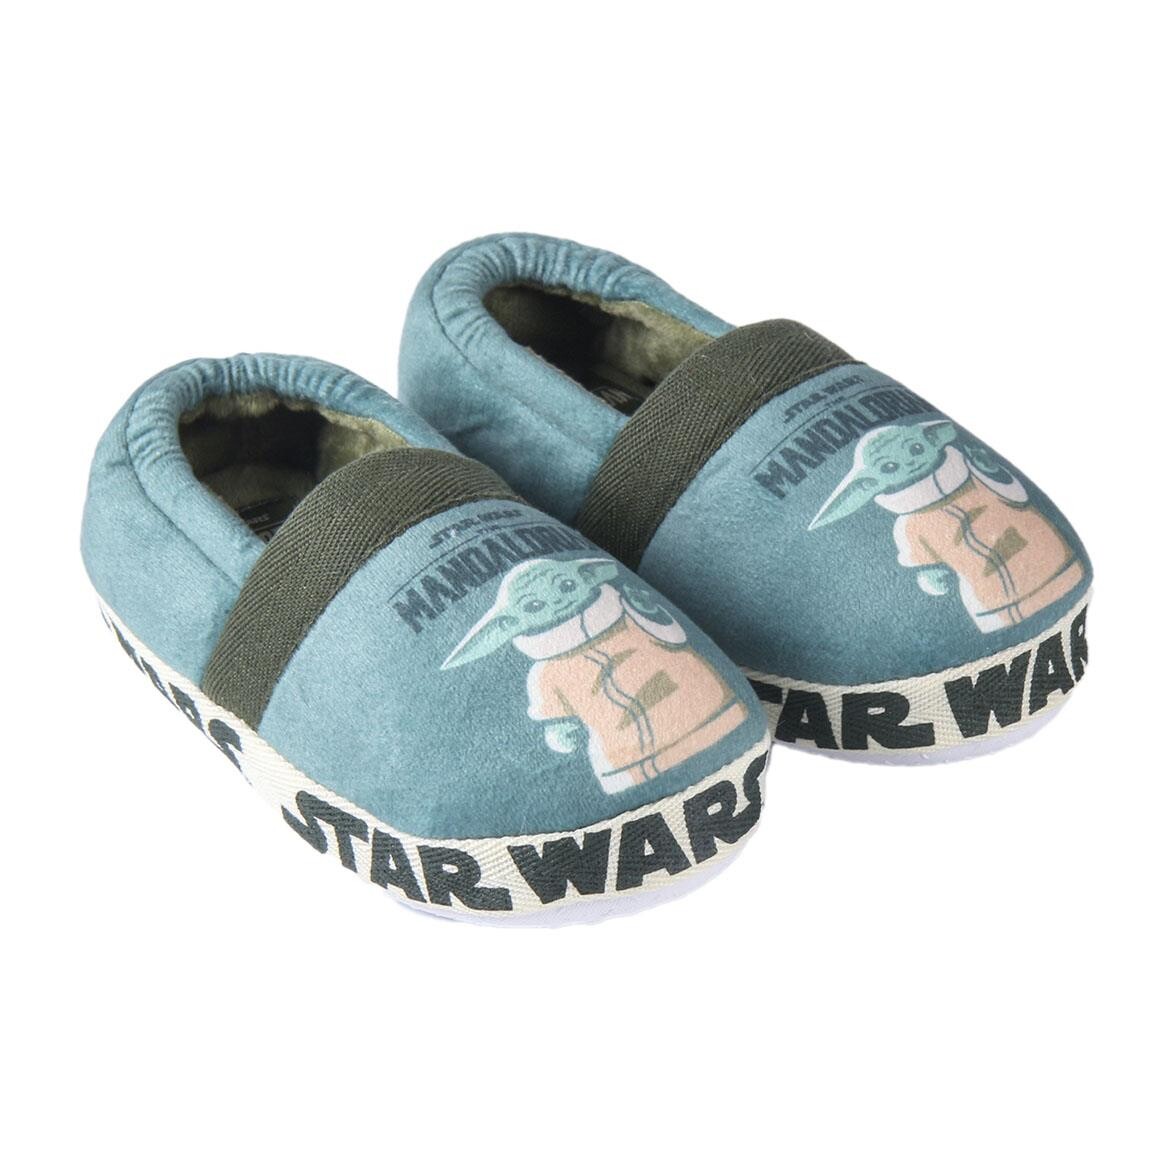 ص جيد خاصة  Slippers Star Wars: The Mandalorian - The Child | Clothes and accessories  for merchandise fans